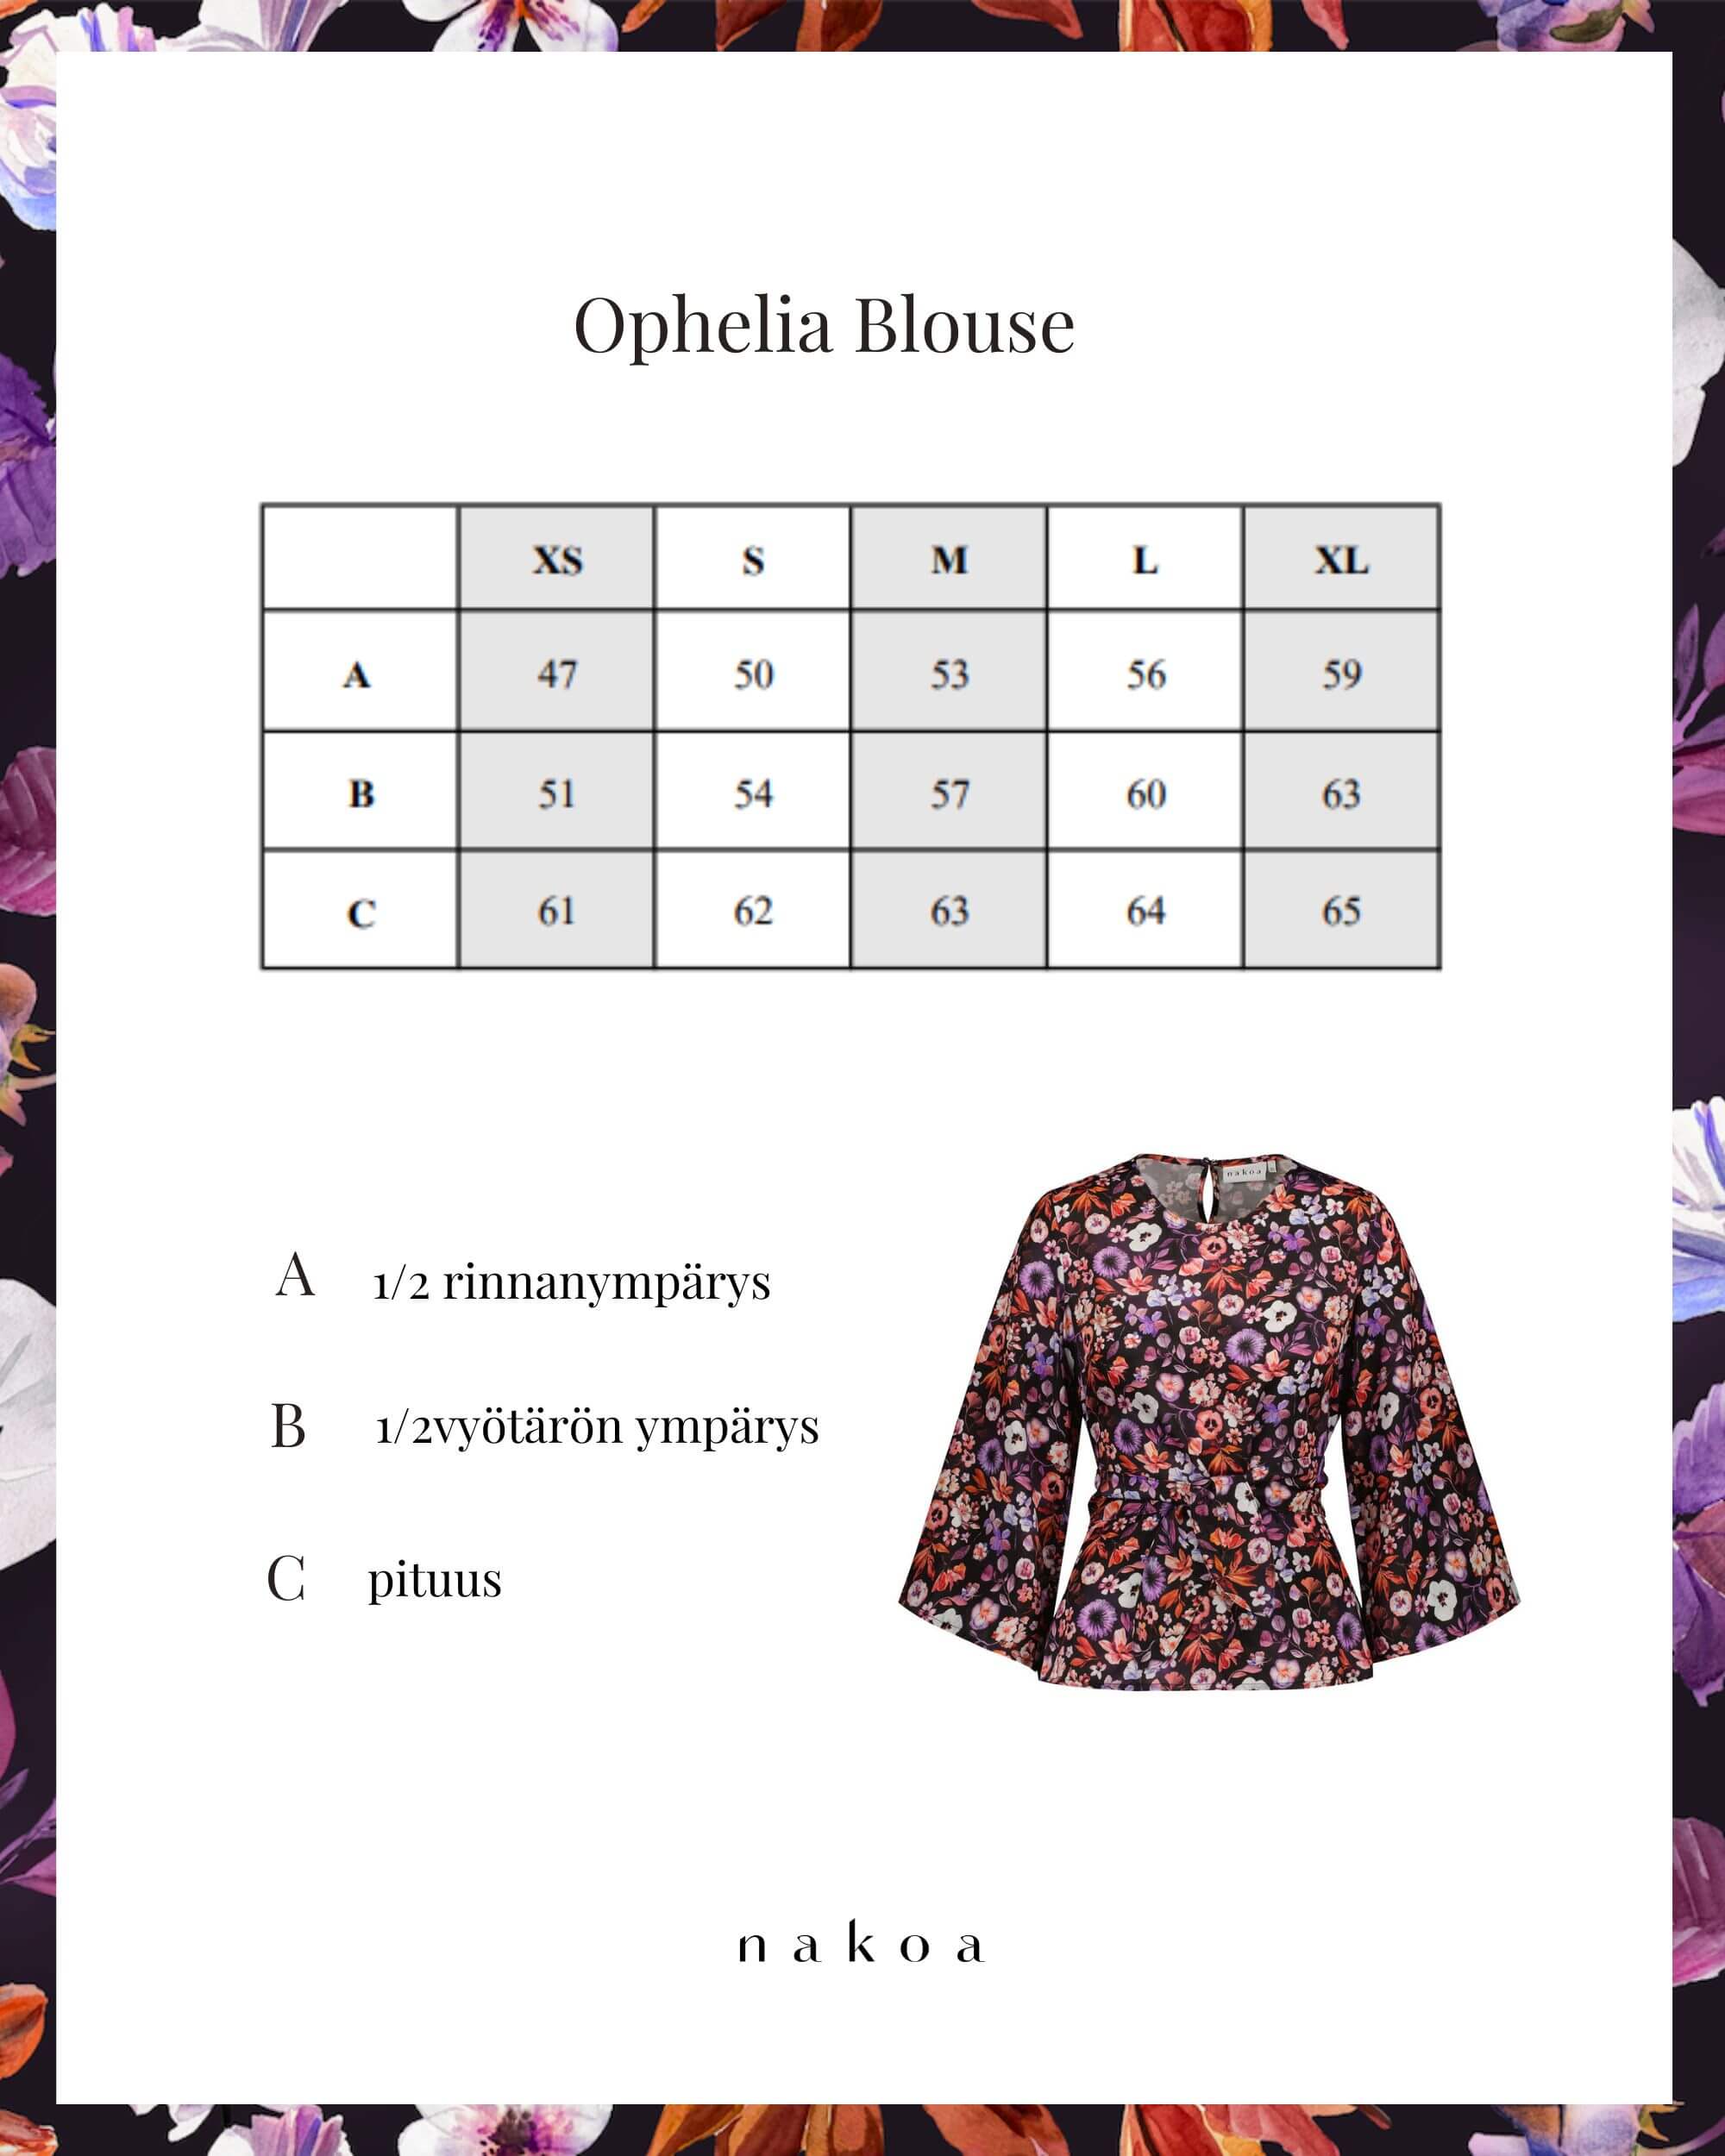 Ophelia Blouse, Violettes